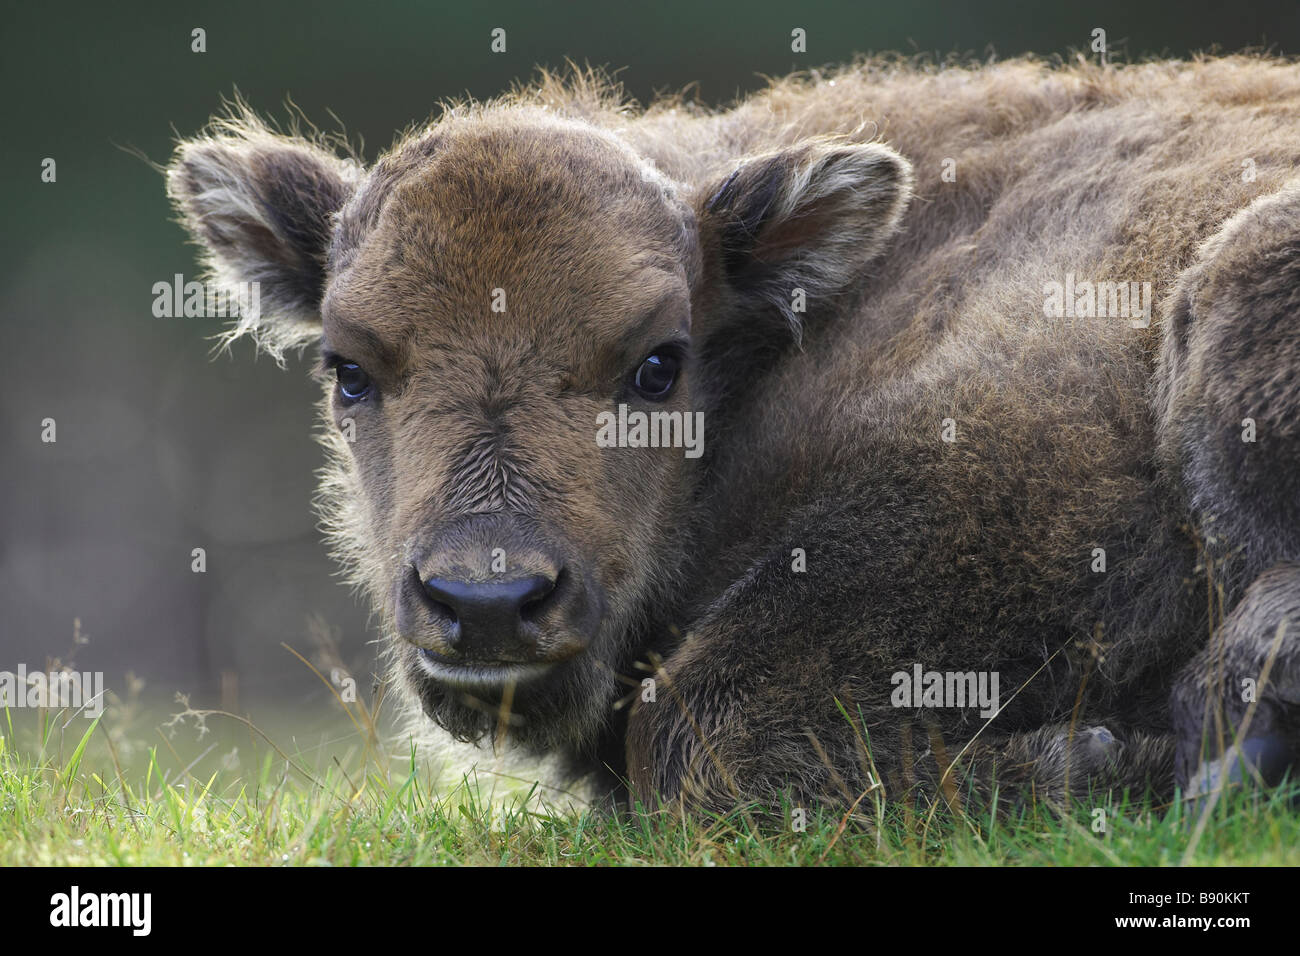 Bison d'Europe (Bison bonasus), jeune veau couché sur l'herbe, portrait Banque D'Images